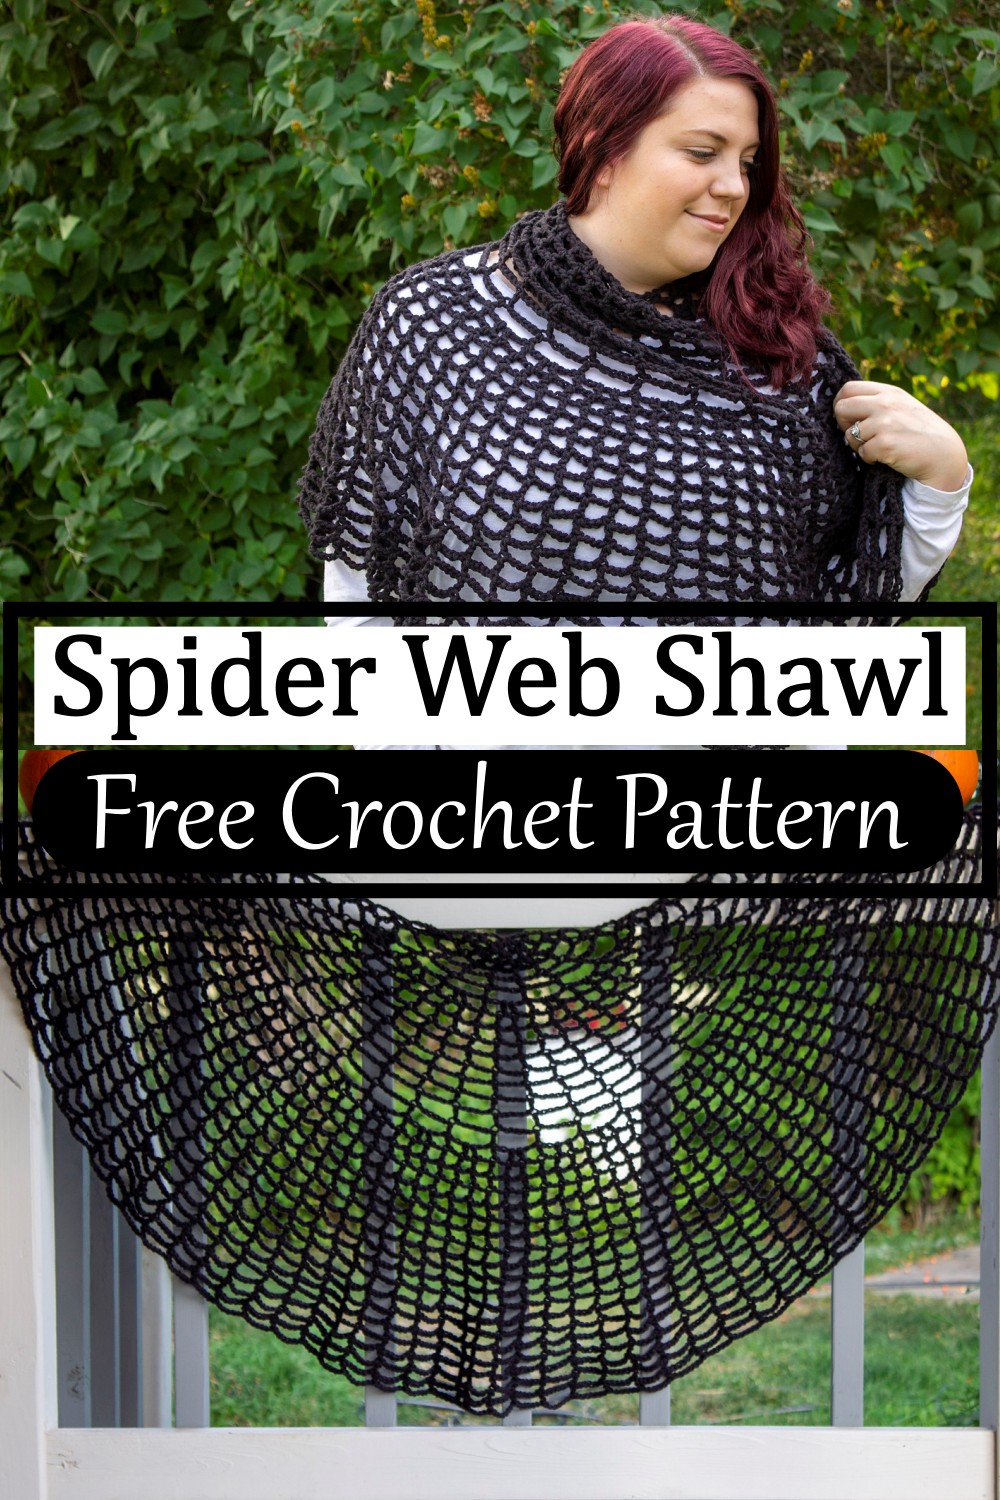 Spider Web Shawl